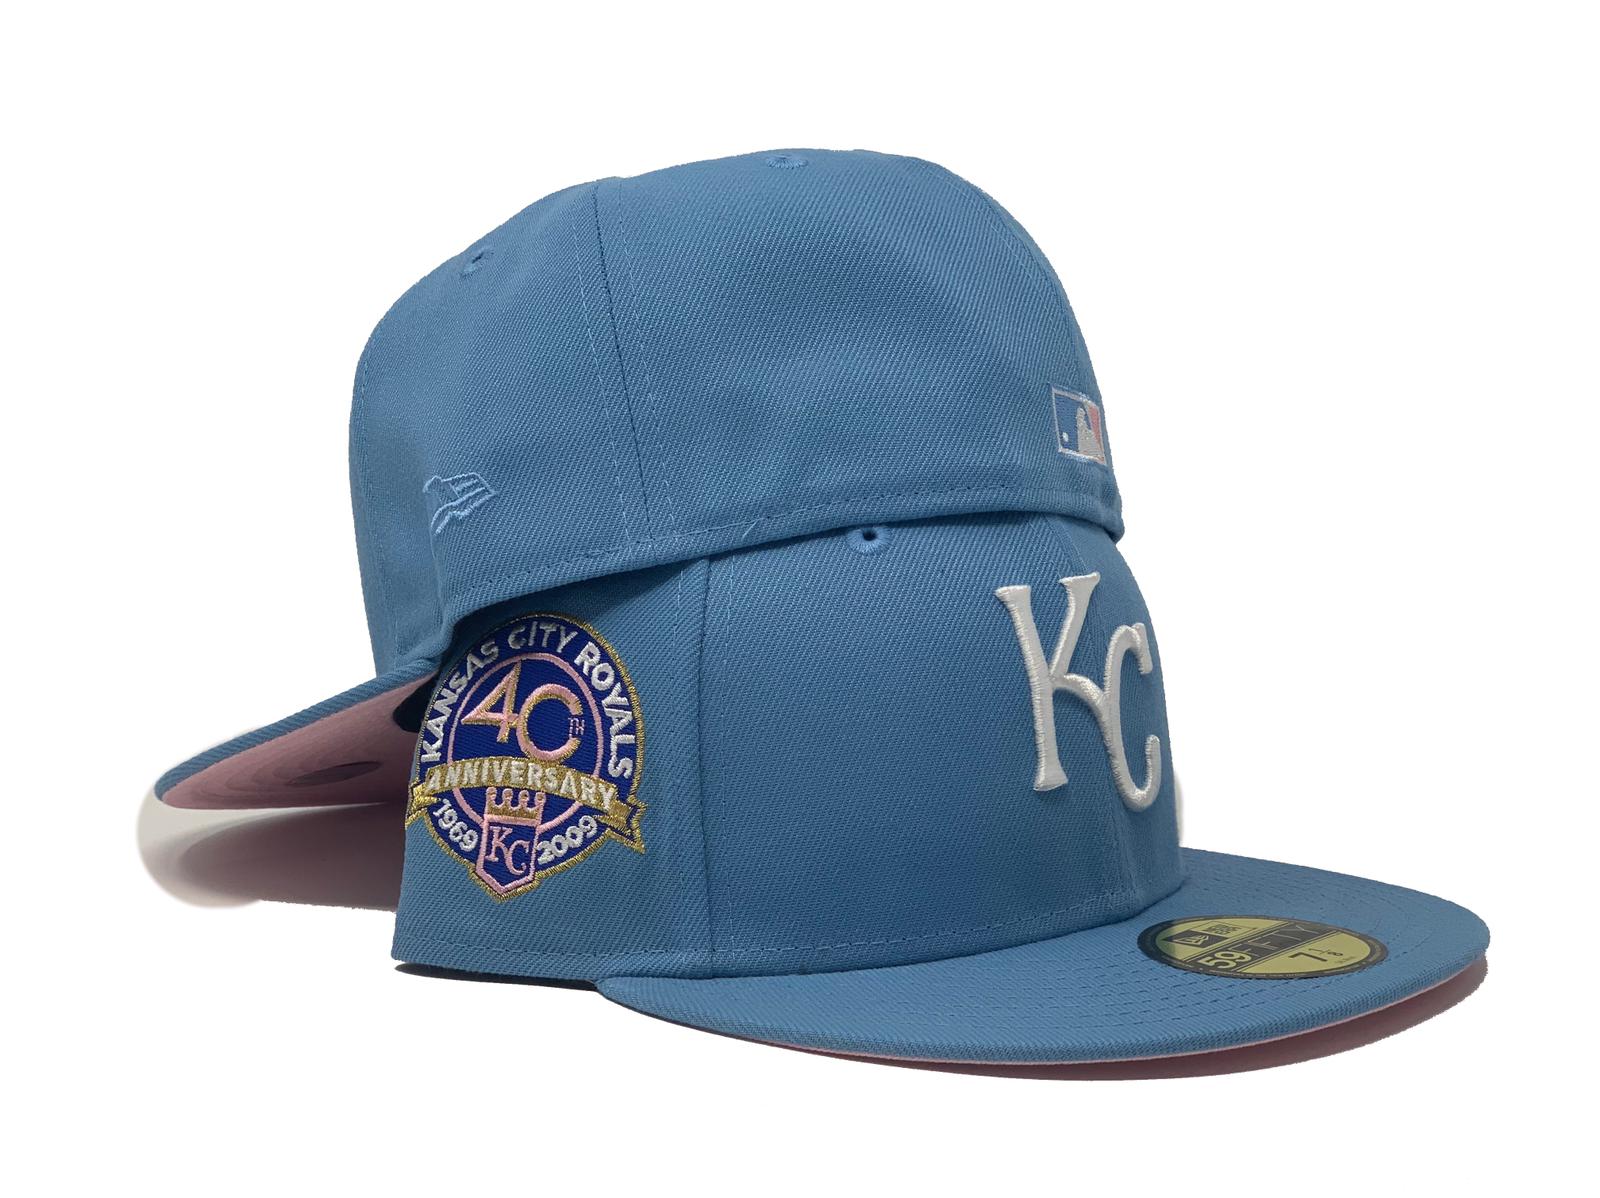 kc royals hats